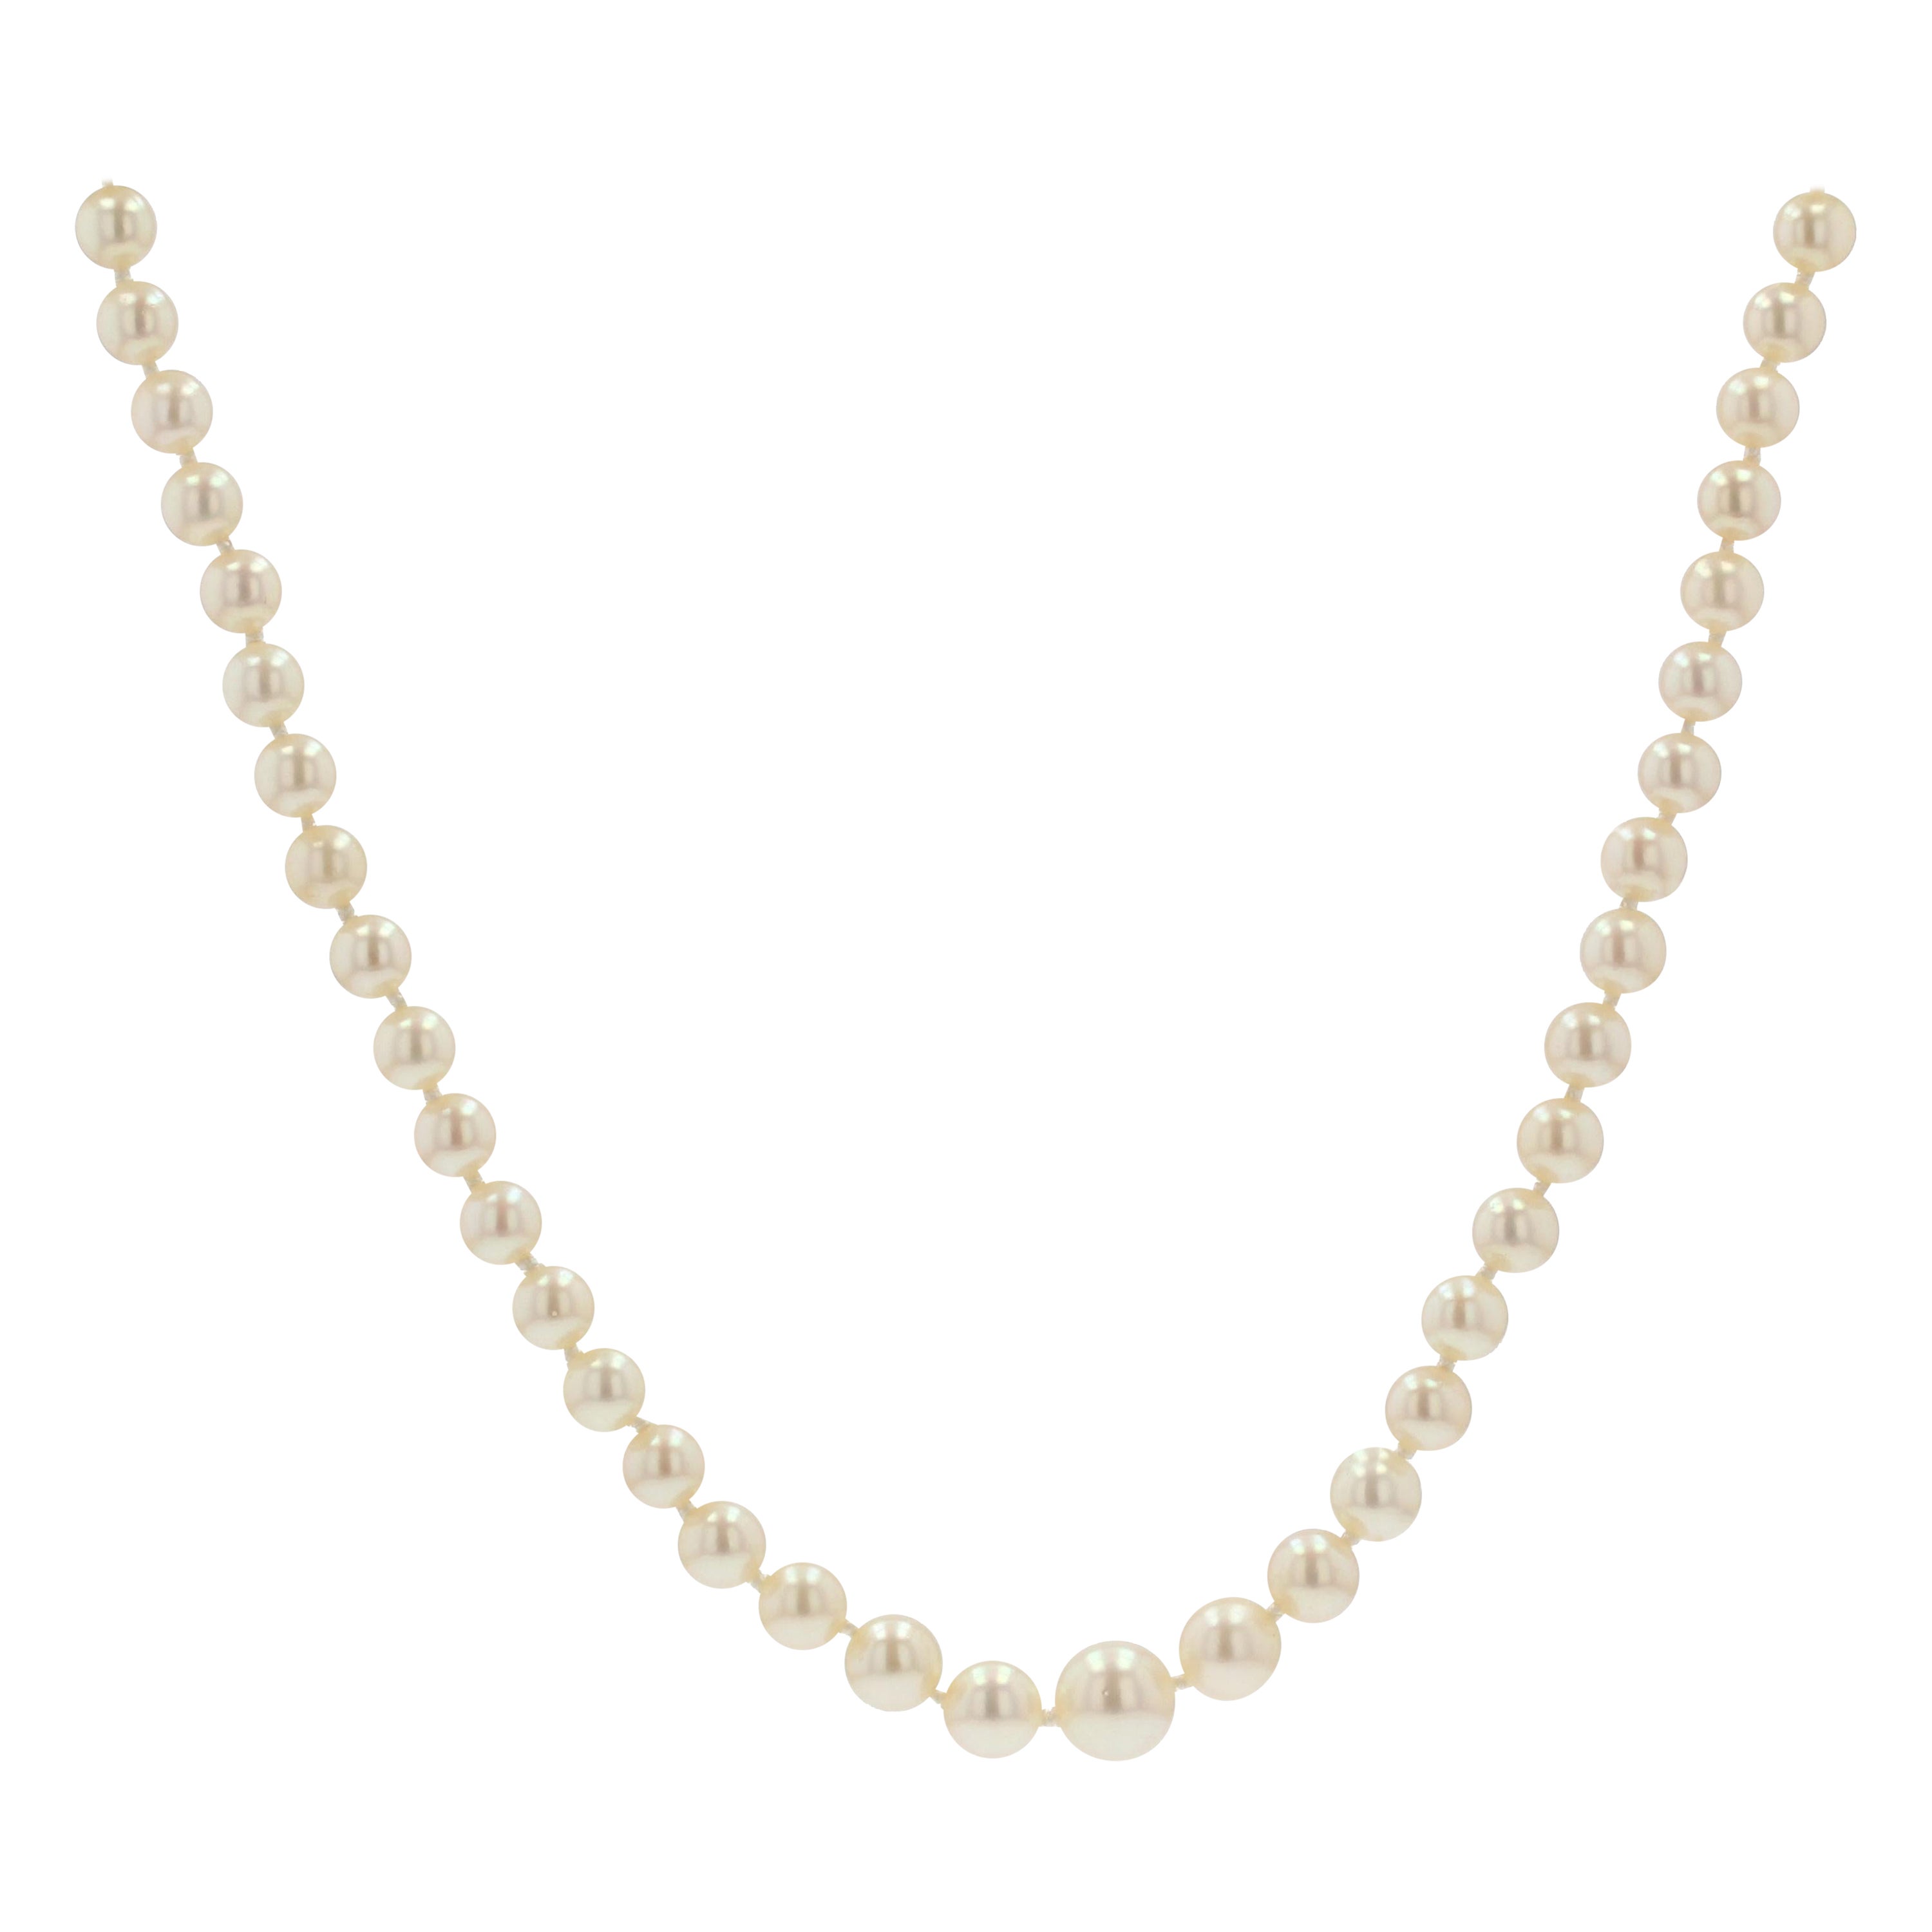 Collier de perles blanches rondes de culture des années 1950